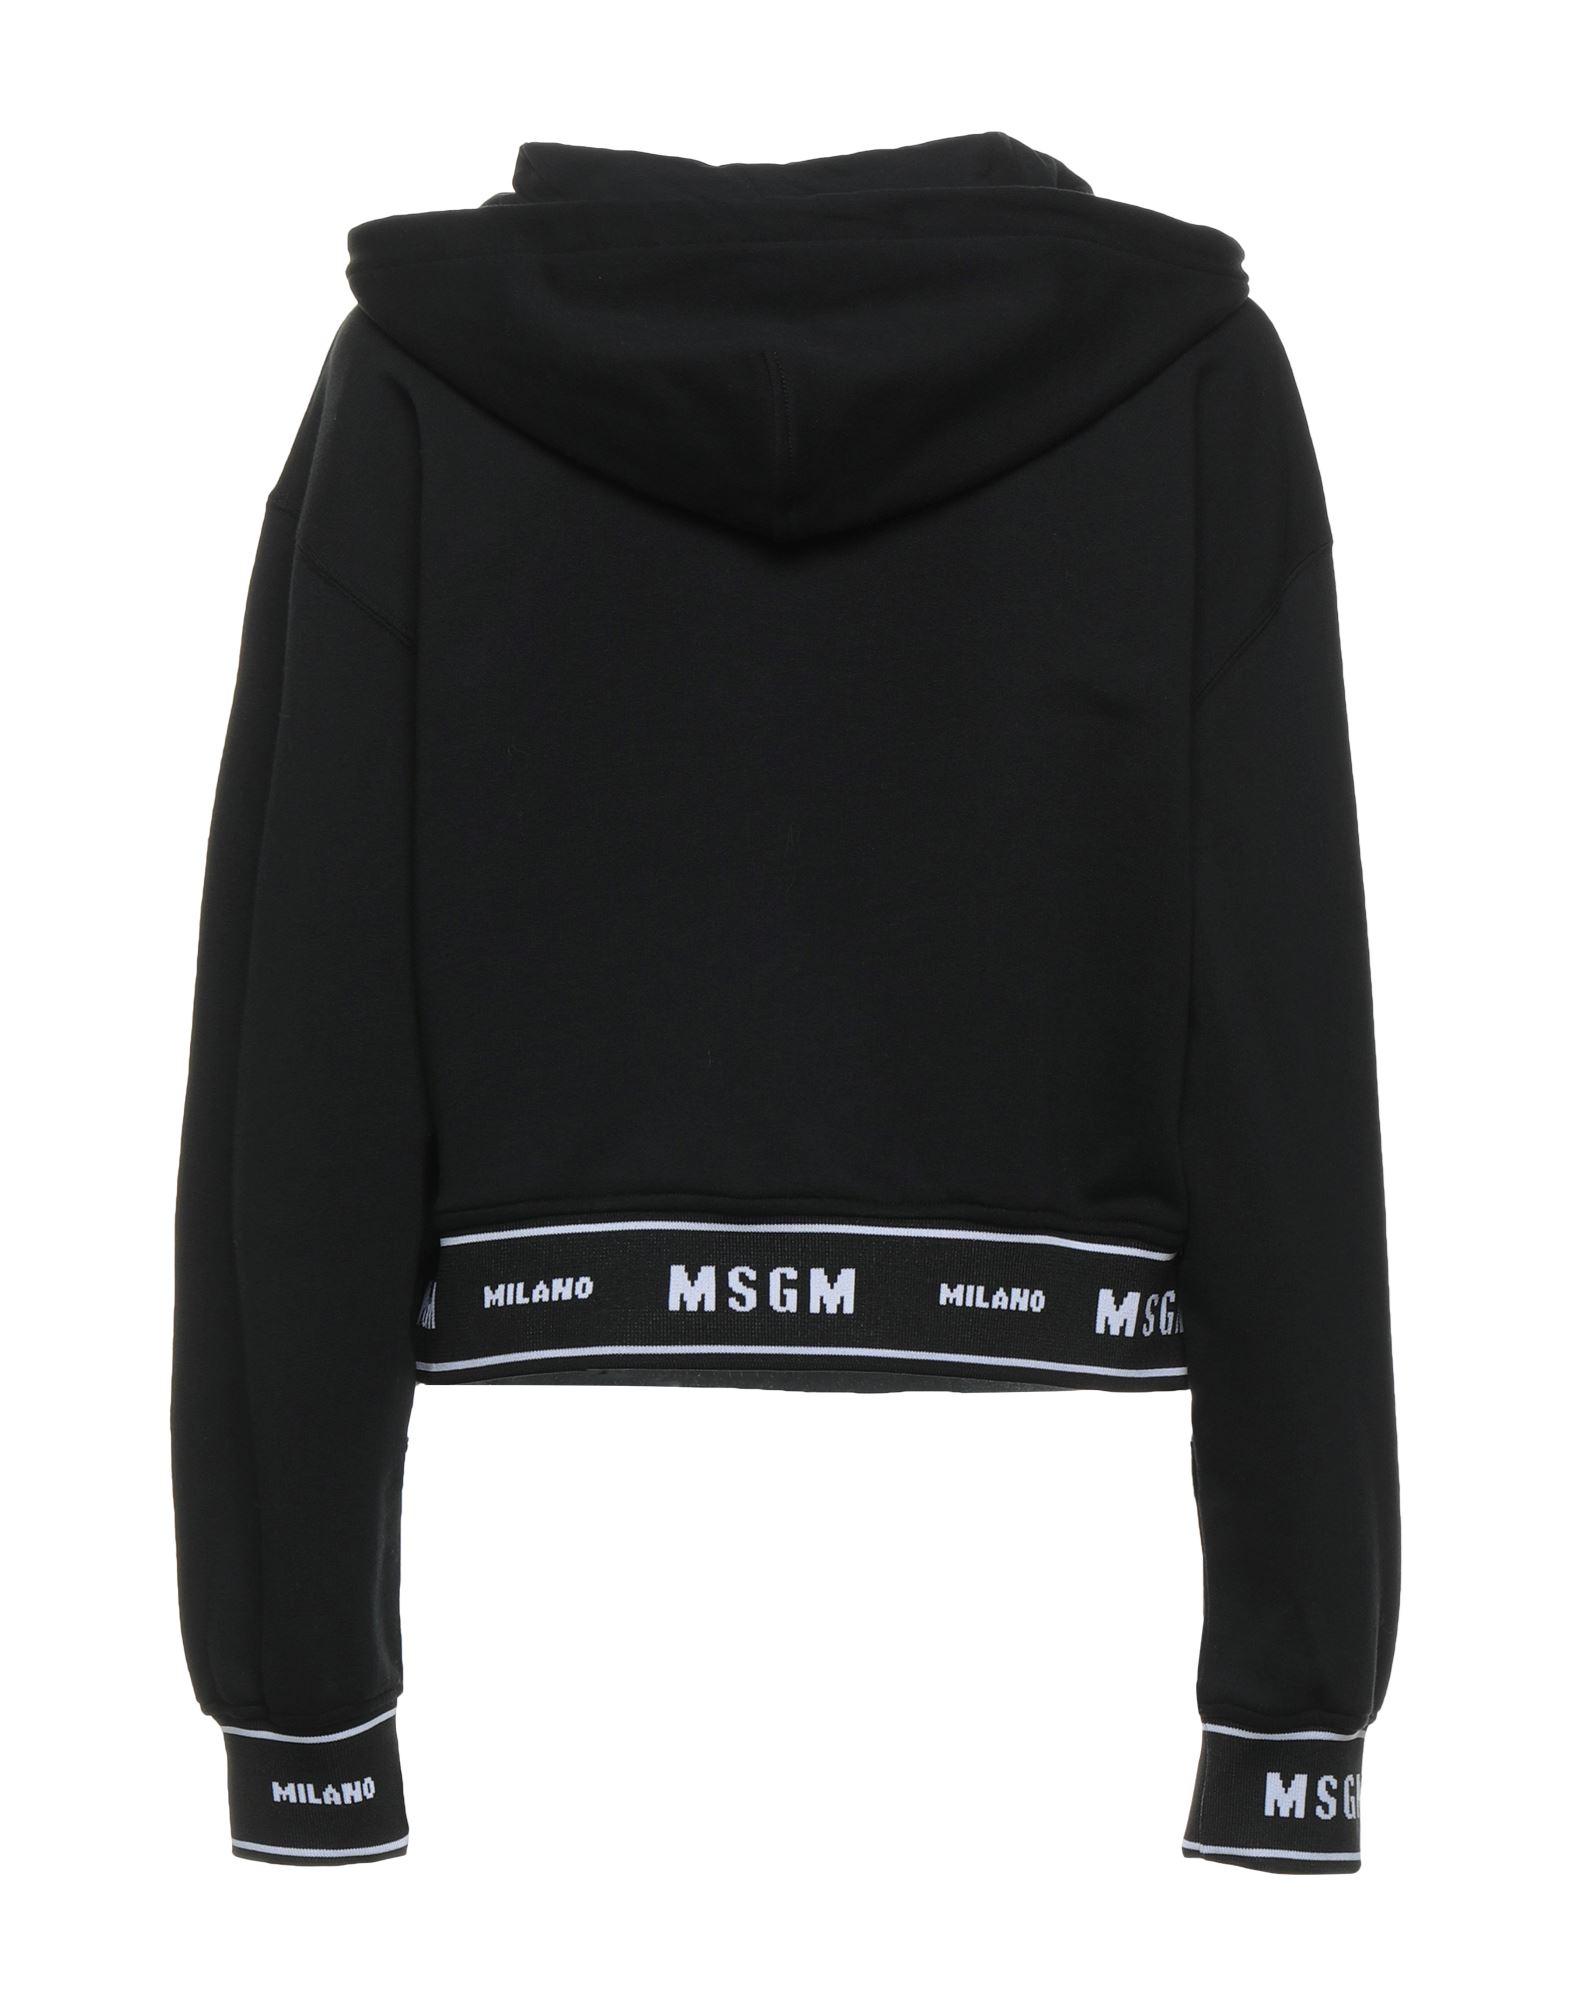 Femme Vêtements Sweats et pull overs Sweats et pull-overs Milly logo sweatshirt Étoile Isabel Marant en coloris Noir 